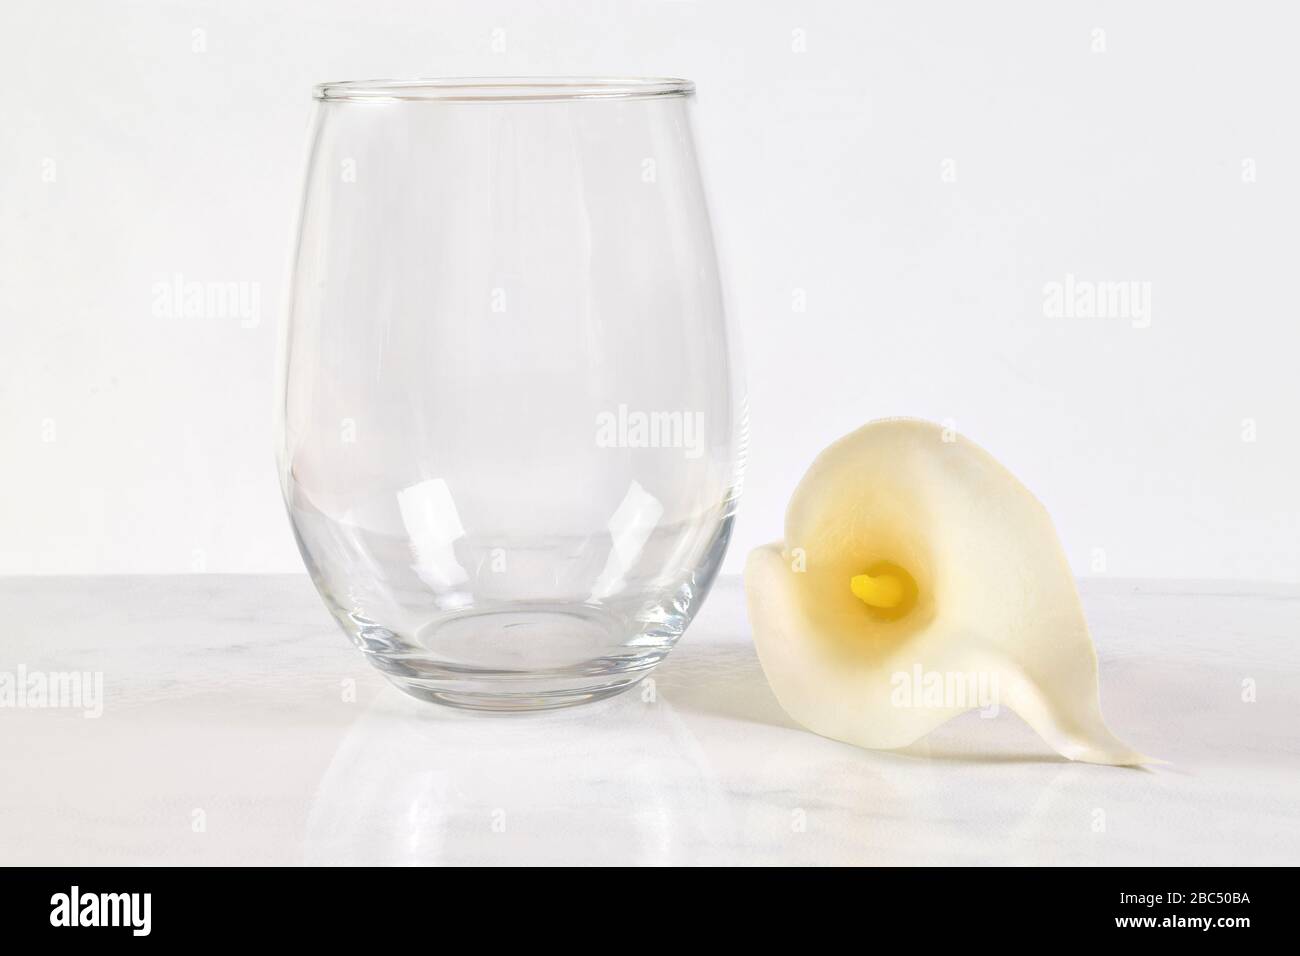 Dieser von Ostern inspirierte Mock up verfügt über einen stemmlosen Winzpass neben einer hübschen weißen Calla-Lilie. Stockfoto